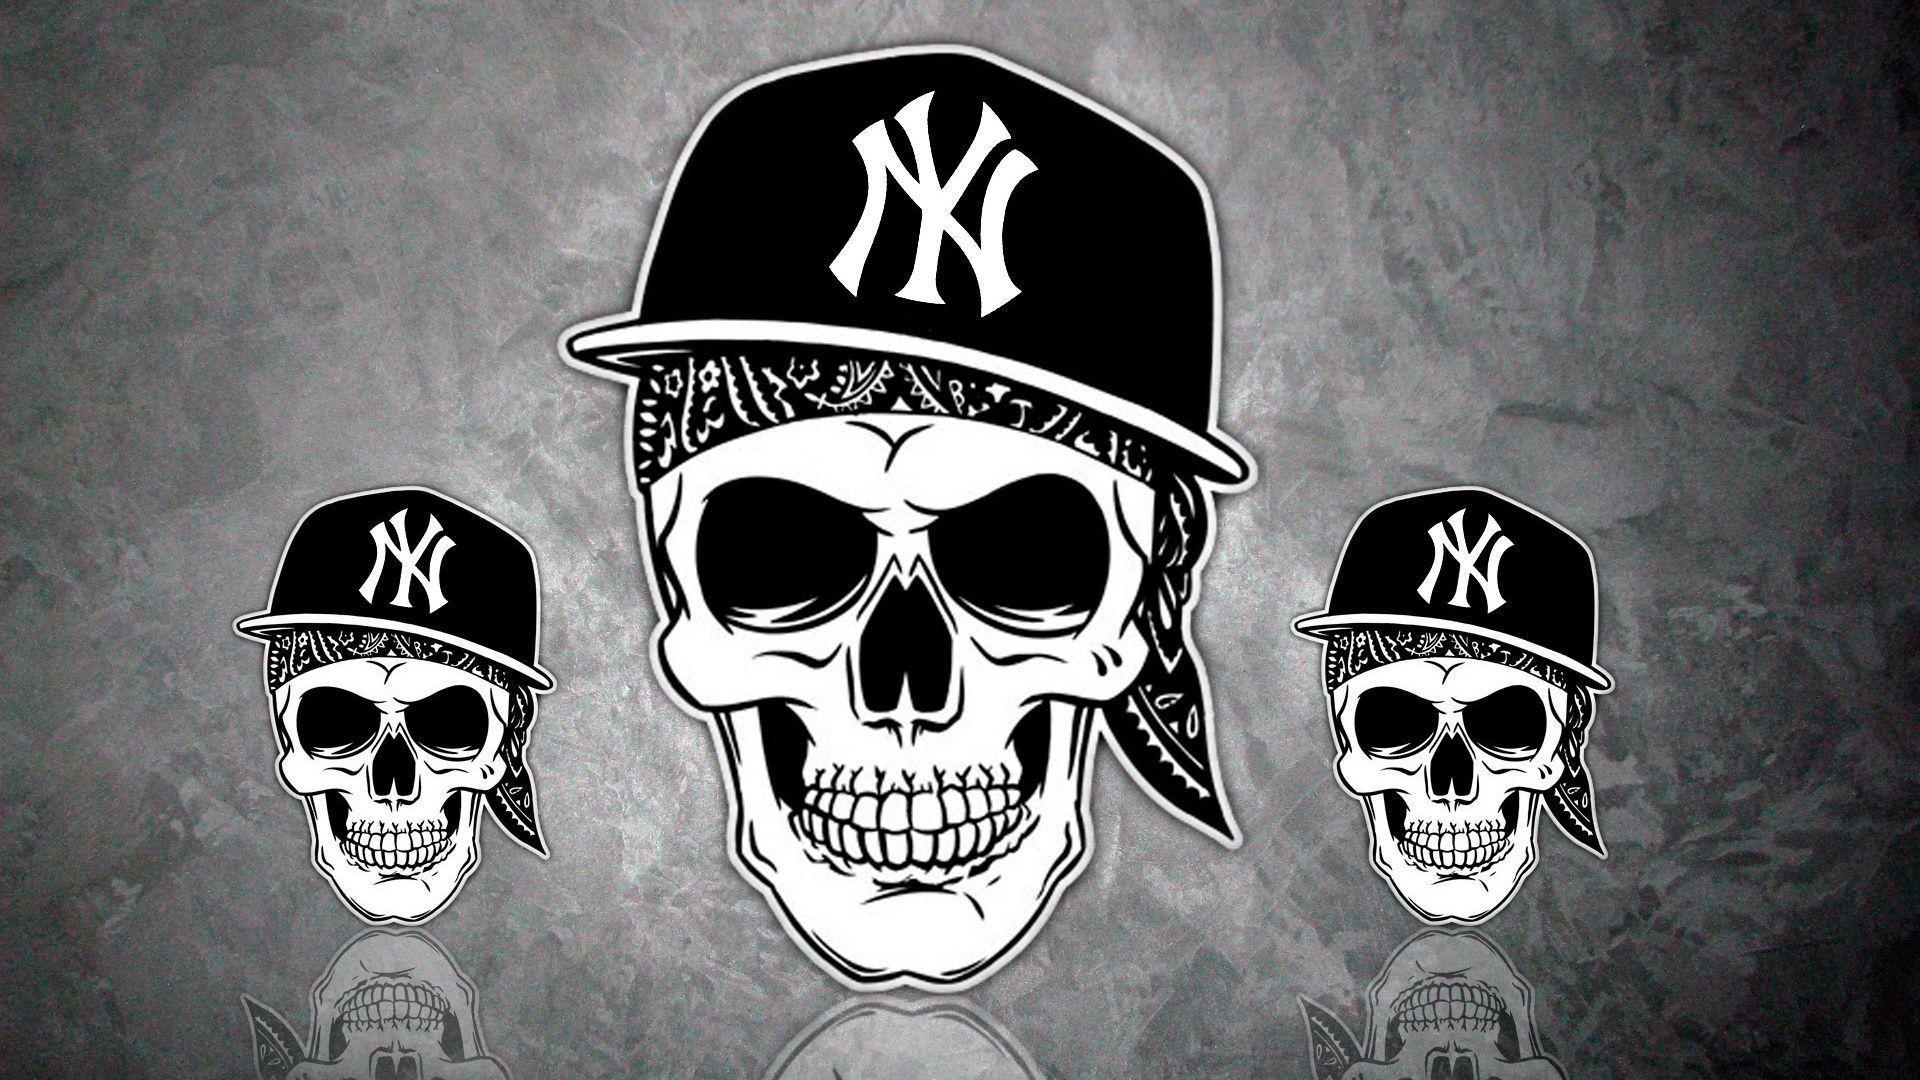 Rap, Skull, Skull, Cap, La Coka Nostra, Hip Hop, Ny